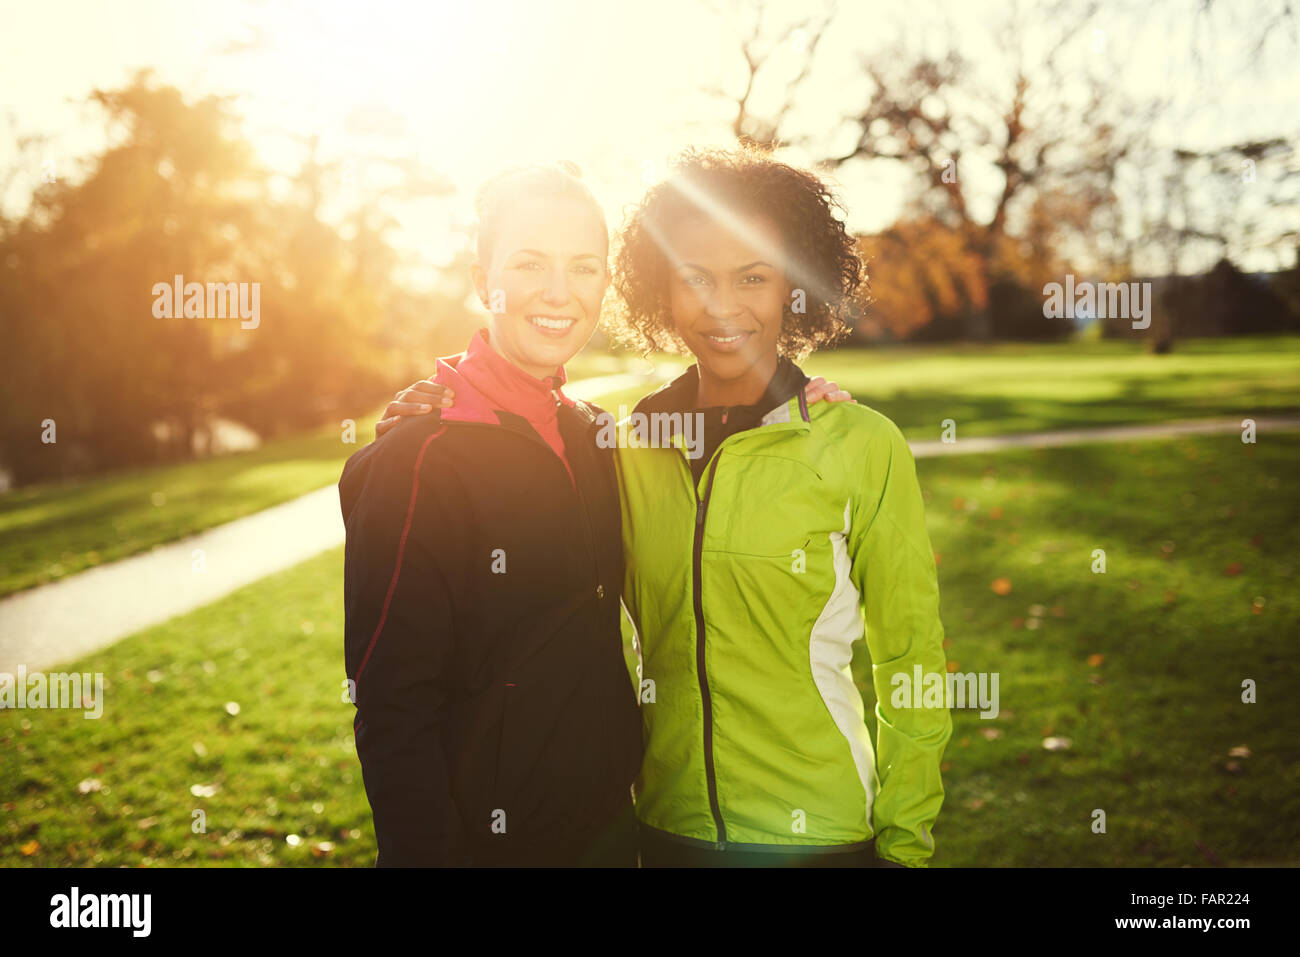 Zwei junge Sportlerinnen umarmt und lächelt in die Kamera, während Sie im Park stehen. Sonnig Stockfoto